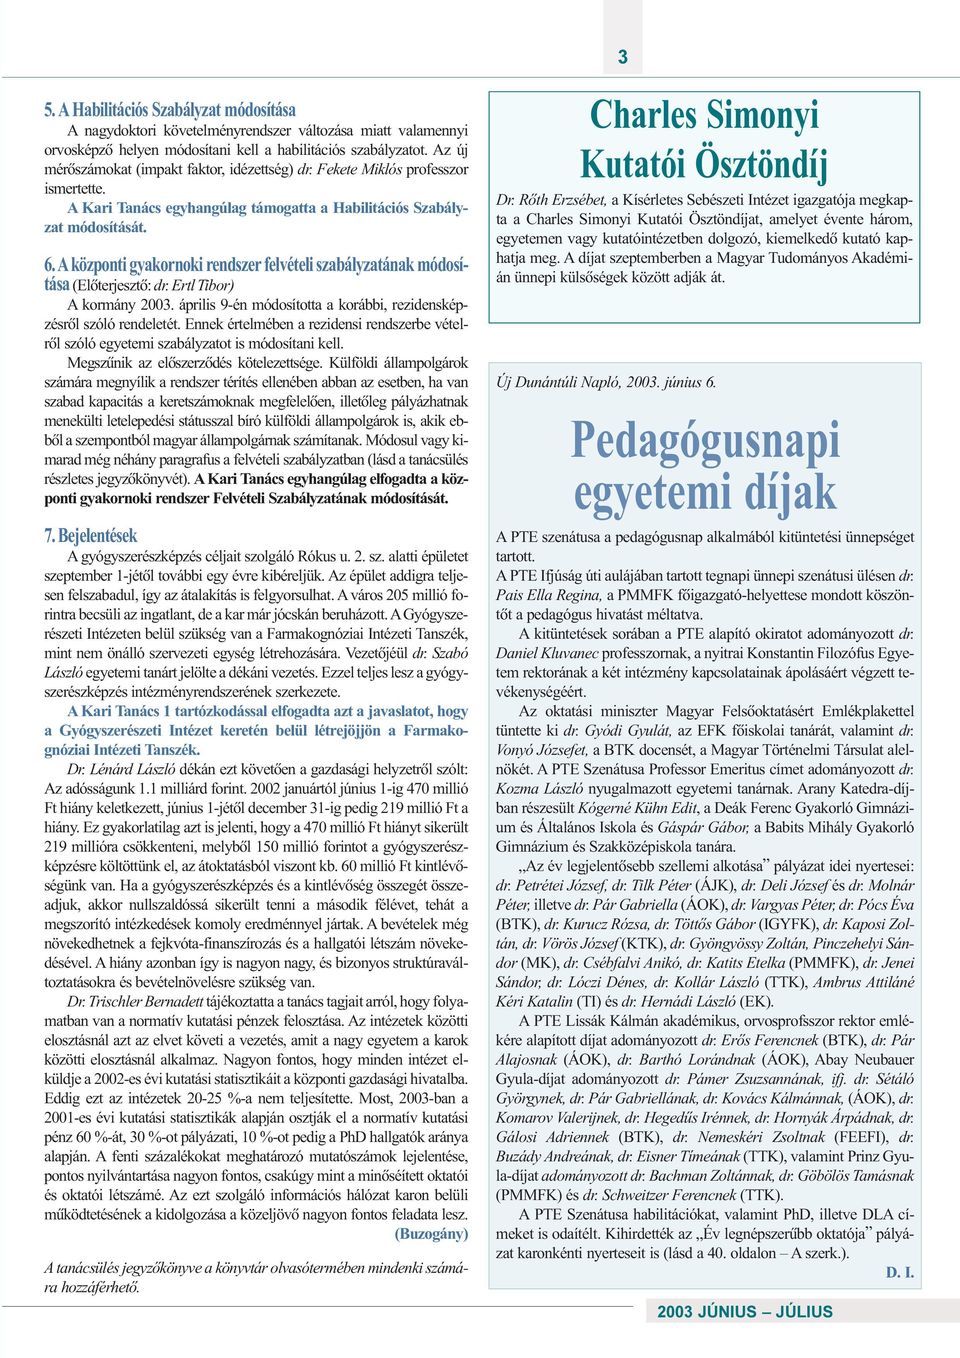 Aközponti gyakornoki rendszer felvételi szabályzatának módosítása (Elõterjesztõ: dr. Ertl Tibor) A kormány 2003. április 9-én módosította a korábbi, rezidensképzésrõl szóló rendeletét.